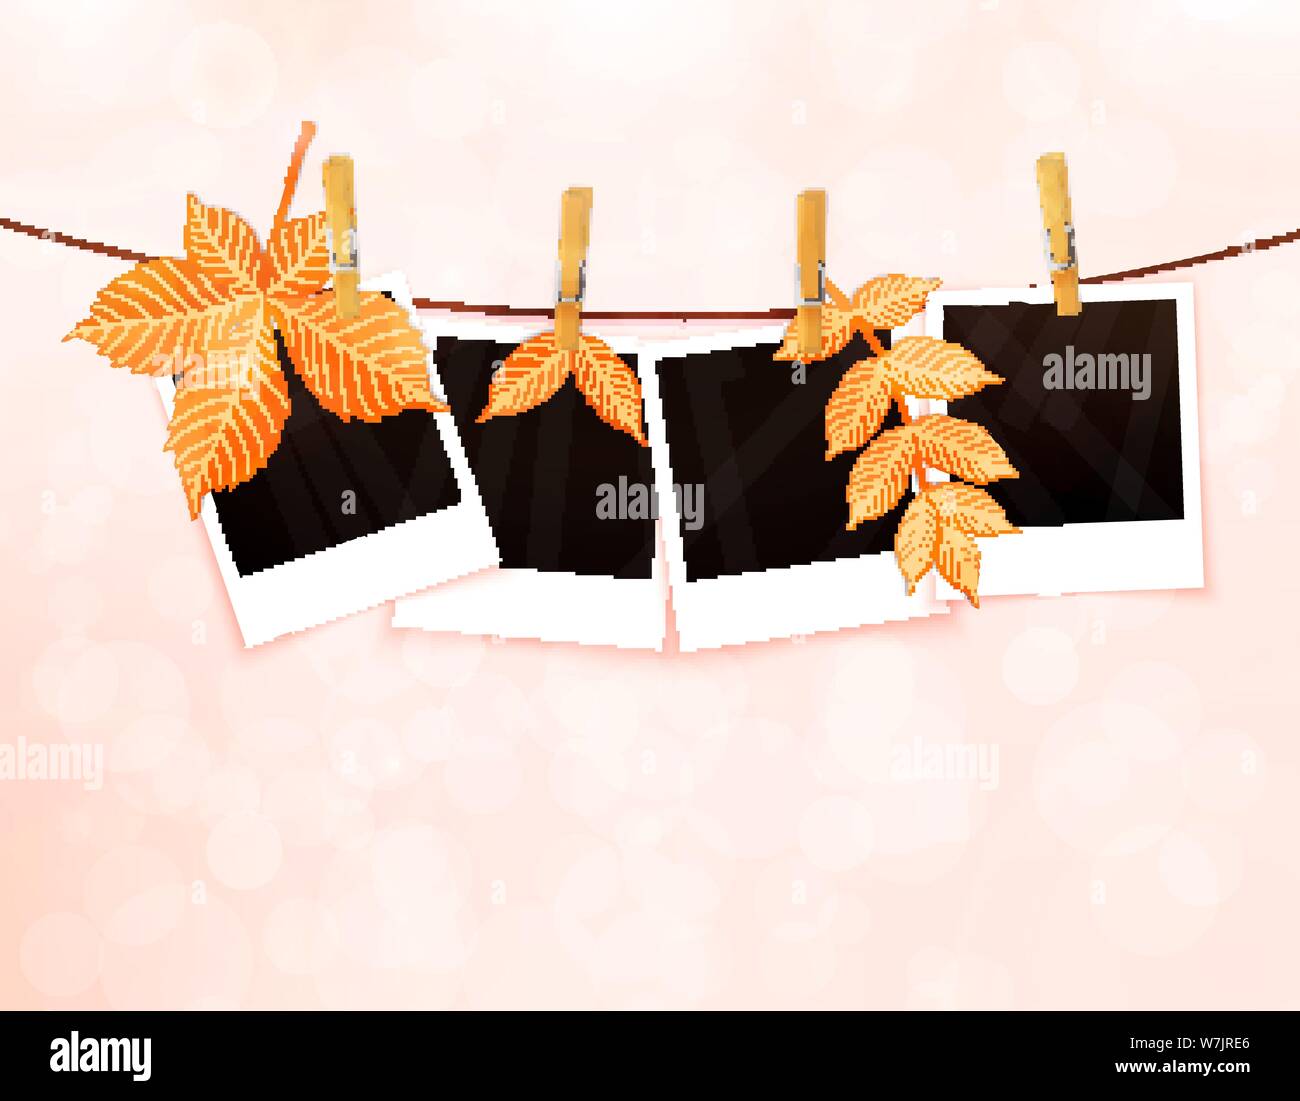 Fotos auf Seil mit Wäscheklammern und Blätter im Herbst Vektor Stock Vektor